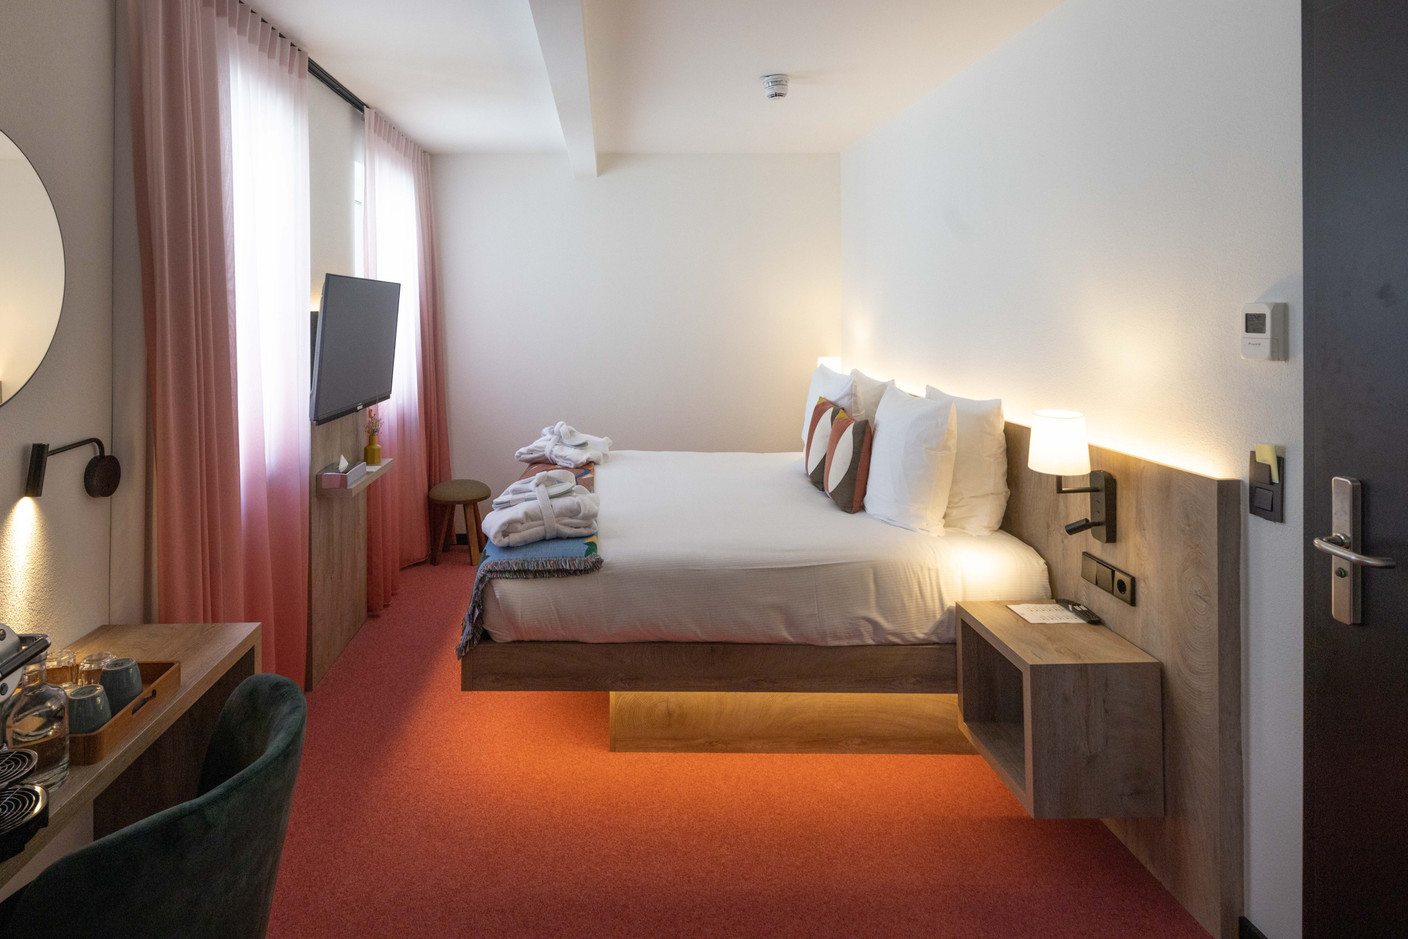 Chambre cozy à l'hotel Kazakiwi à Luxembourg - quartier de la gare